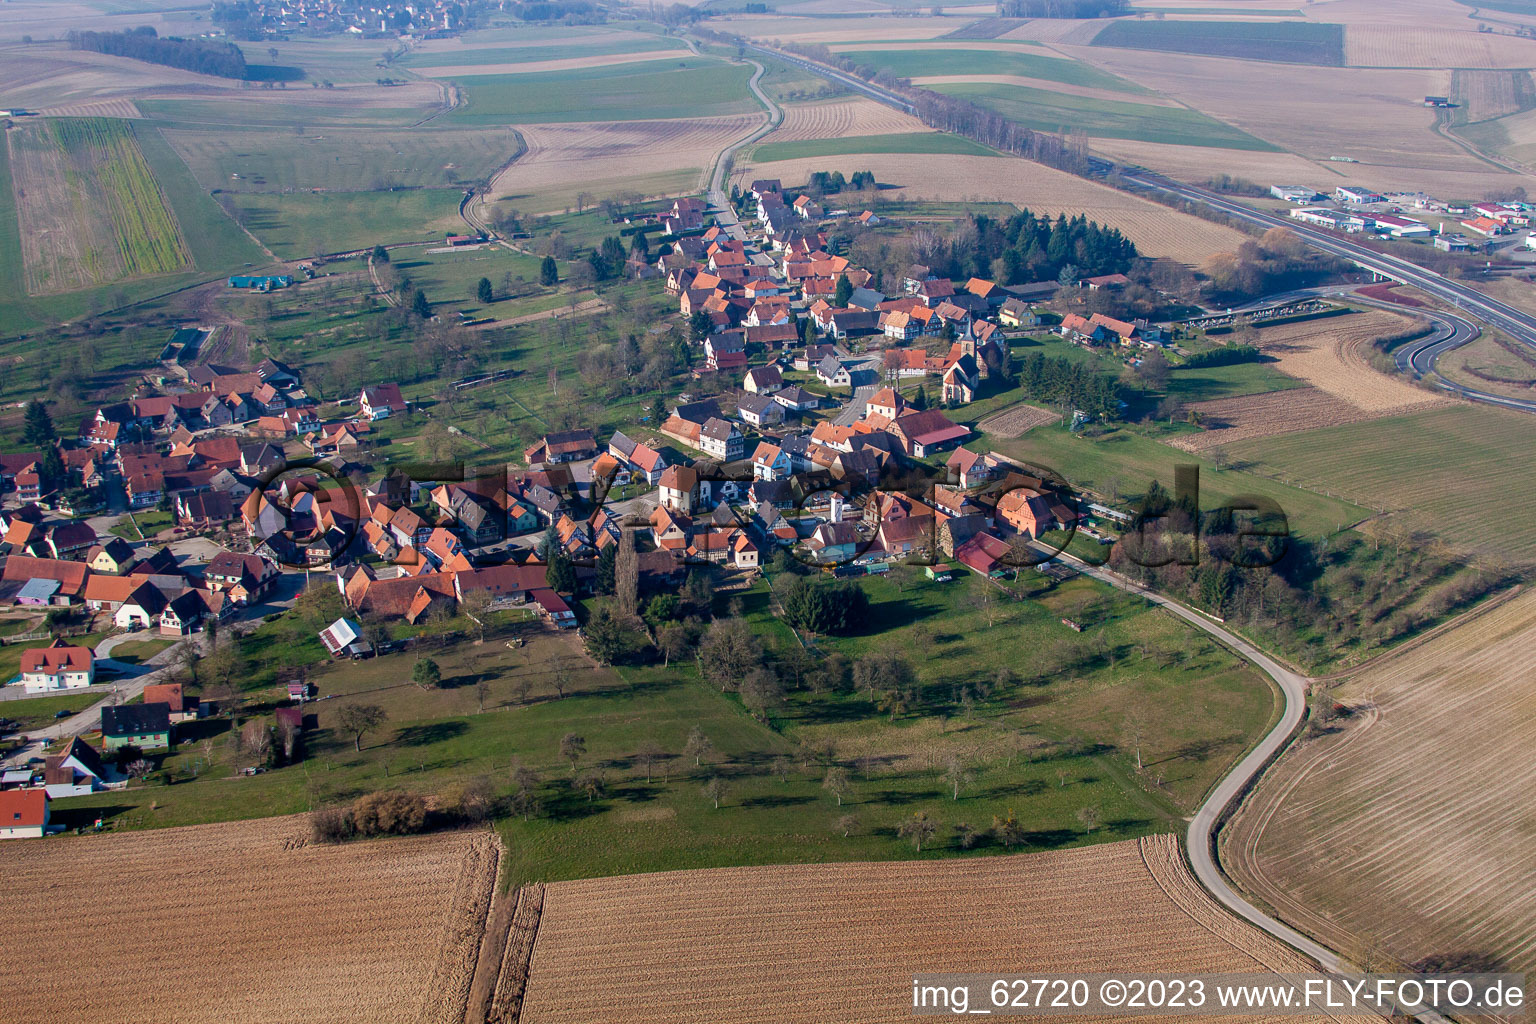 Hohwiller im Bundesland Bas-Rhin, Frankreich von der Drohne aus gesehen